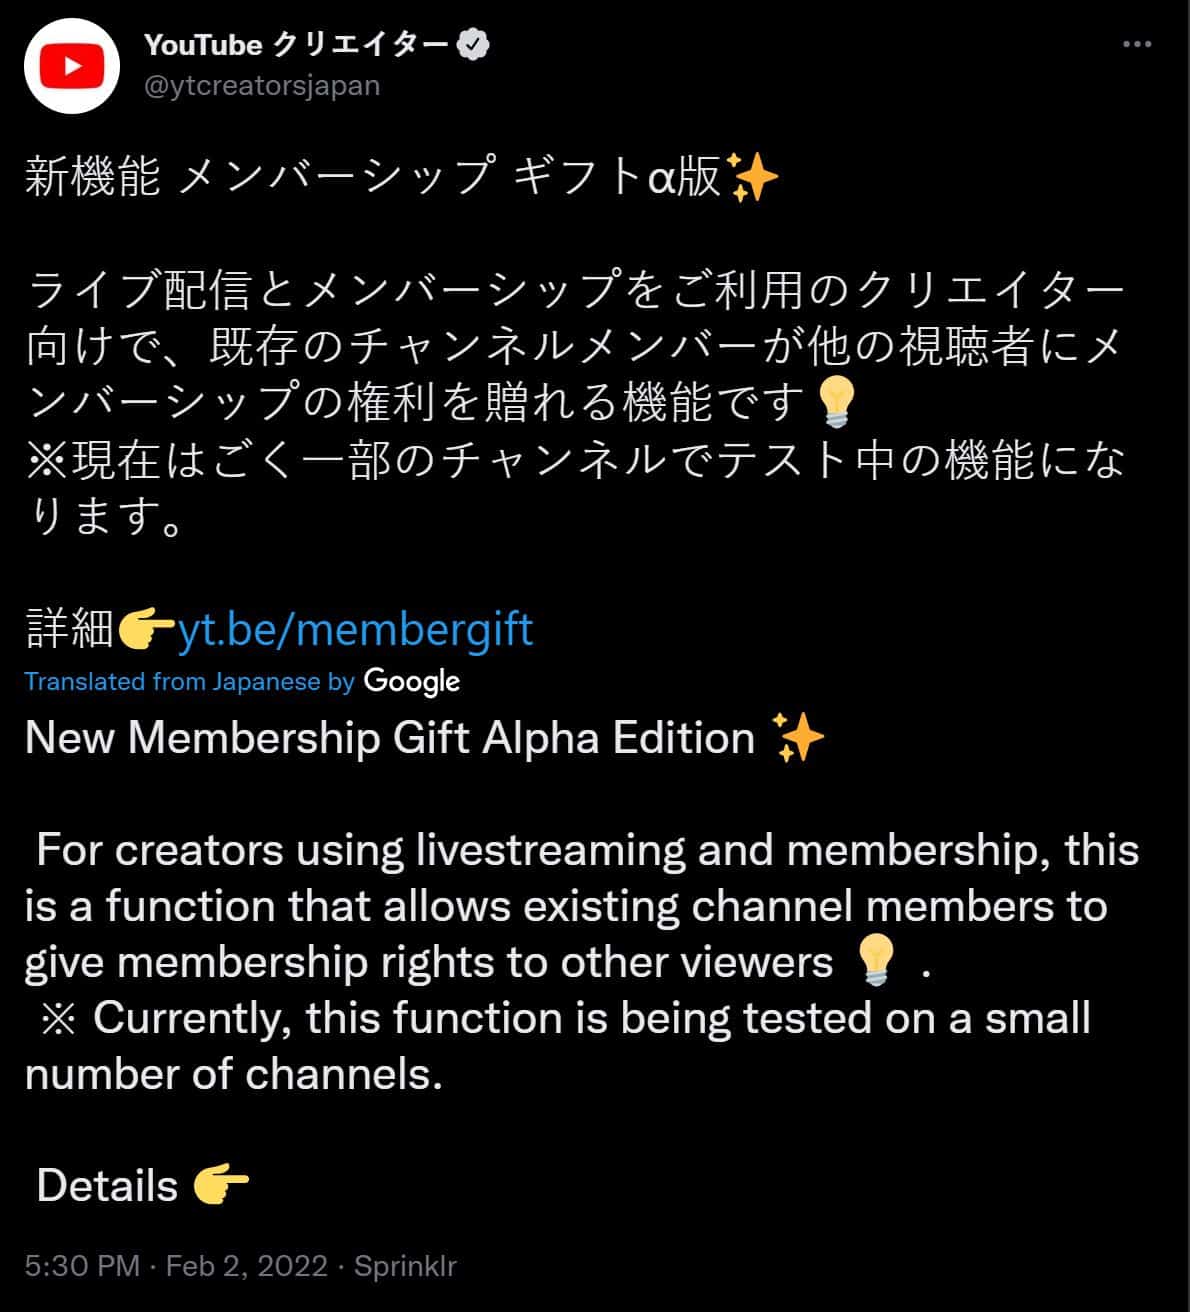 YouTube Japan Gifted Membership Tweet